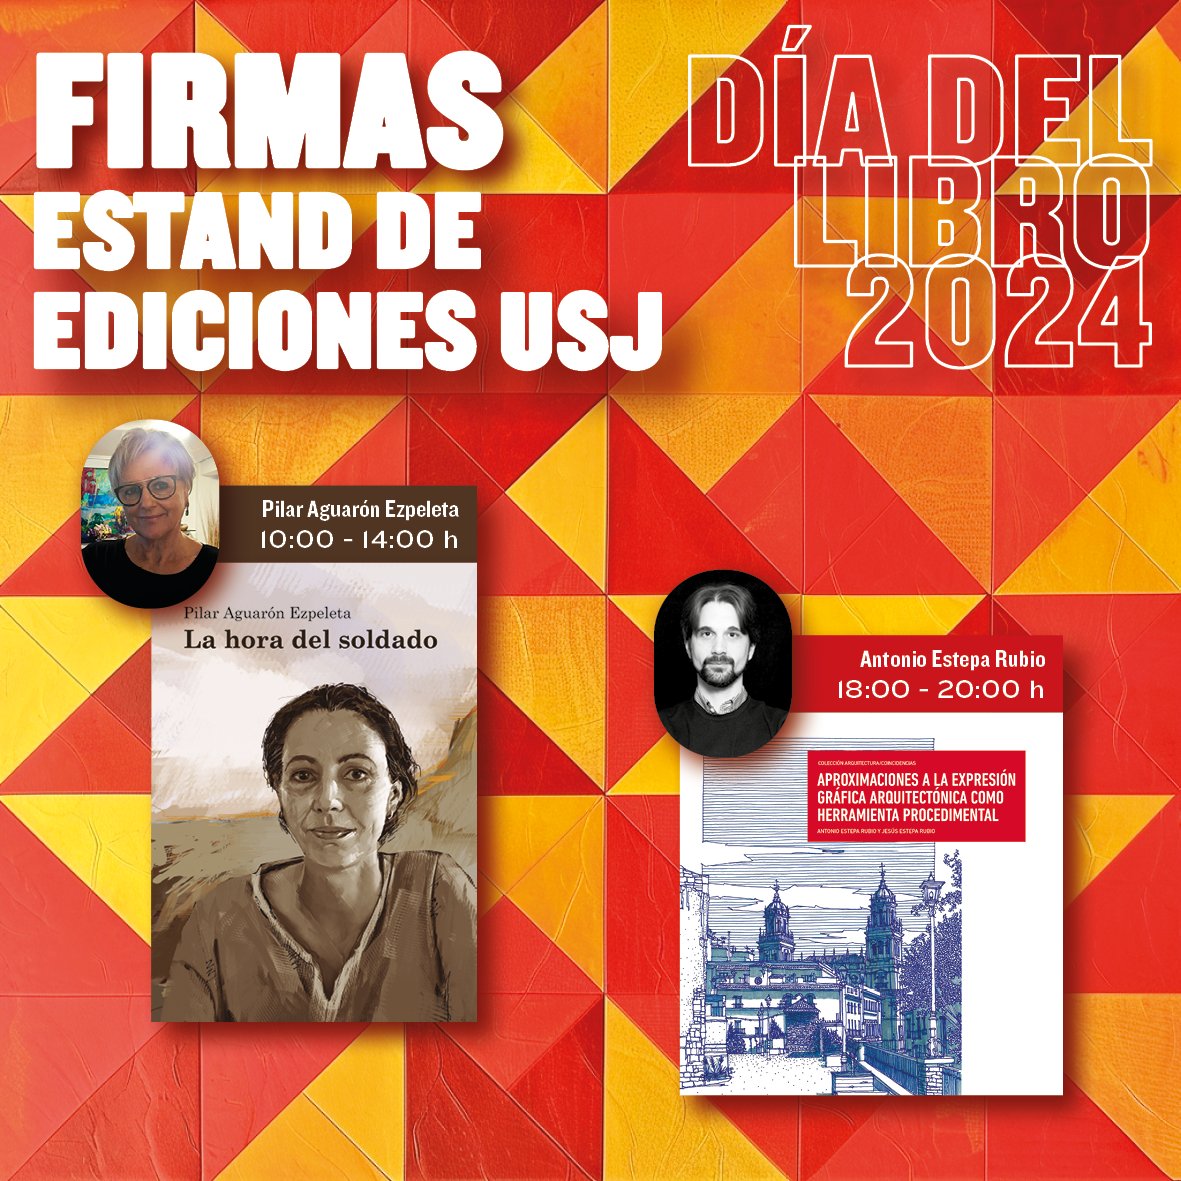 Un año más, estaremos presentes en el #DiaDelLibro de Zaragoza con nuestro estand de Ediciones USJ. Pilar Aguarón y Antonio Estepa nos acompañarán firmando ejemplares de sus nuevos #libros. 🗓️ 23 de abril ⌚️ de 9:30 a 21:30 h 📍 Estand Ediciones USJ, p.º de la Independencia, 4